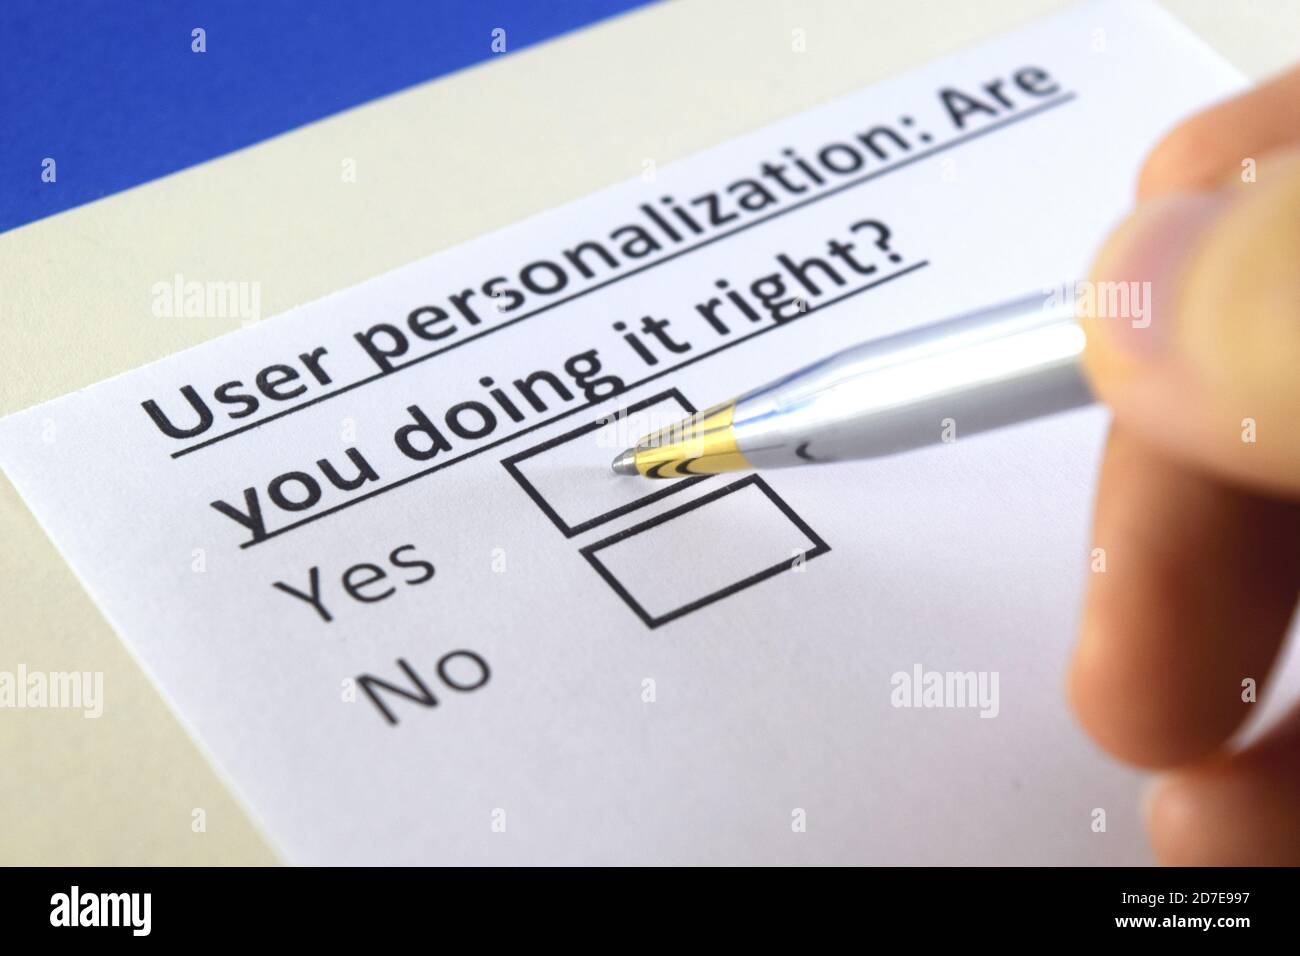 Eine Person beantwortet Fragen zur Personalisierung von Benutzern. Stockfoto